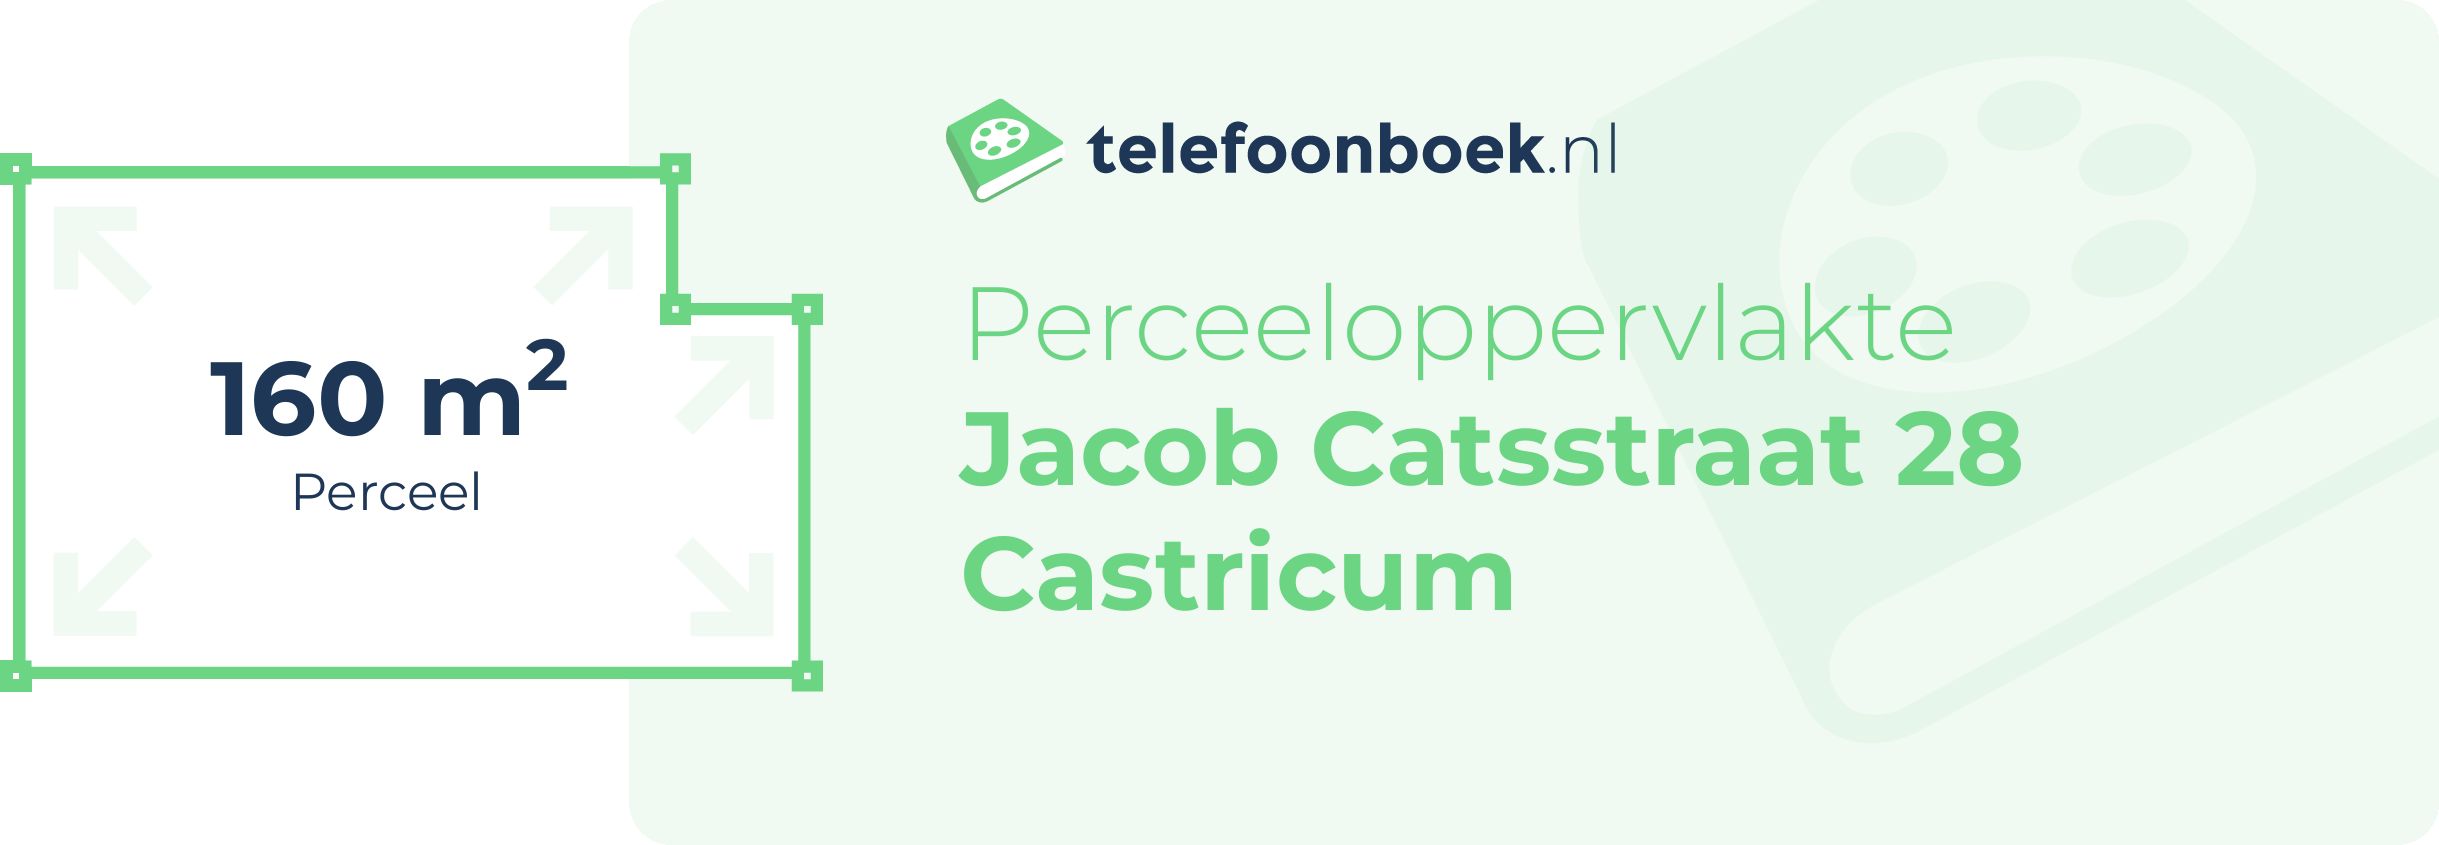 Perceeloppervlakte Jacob Catsstraat 28 Castricum